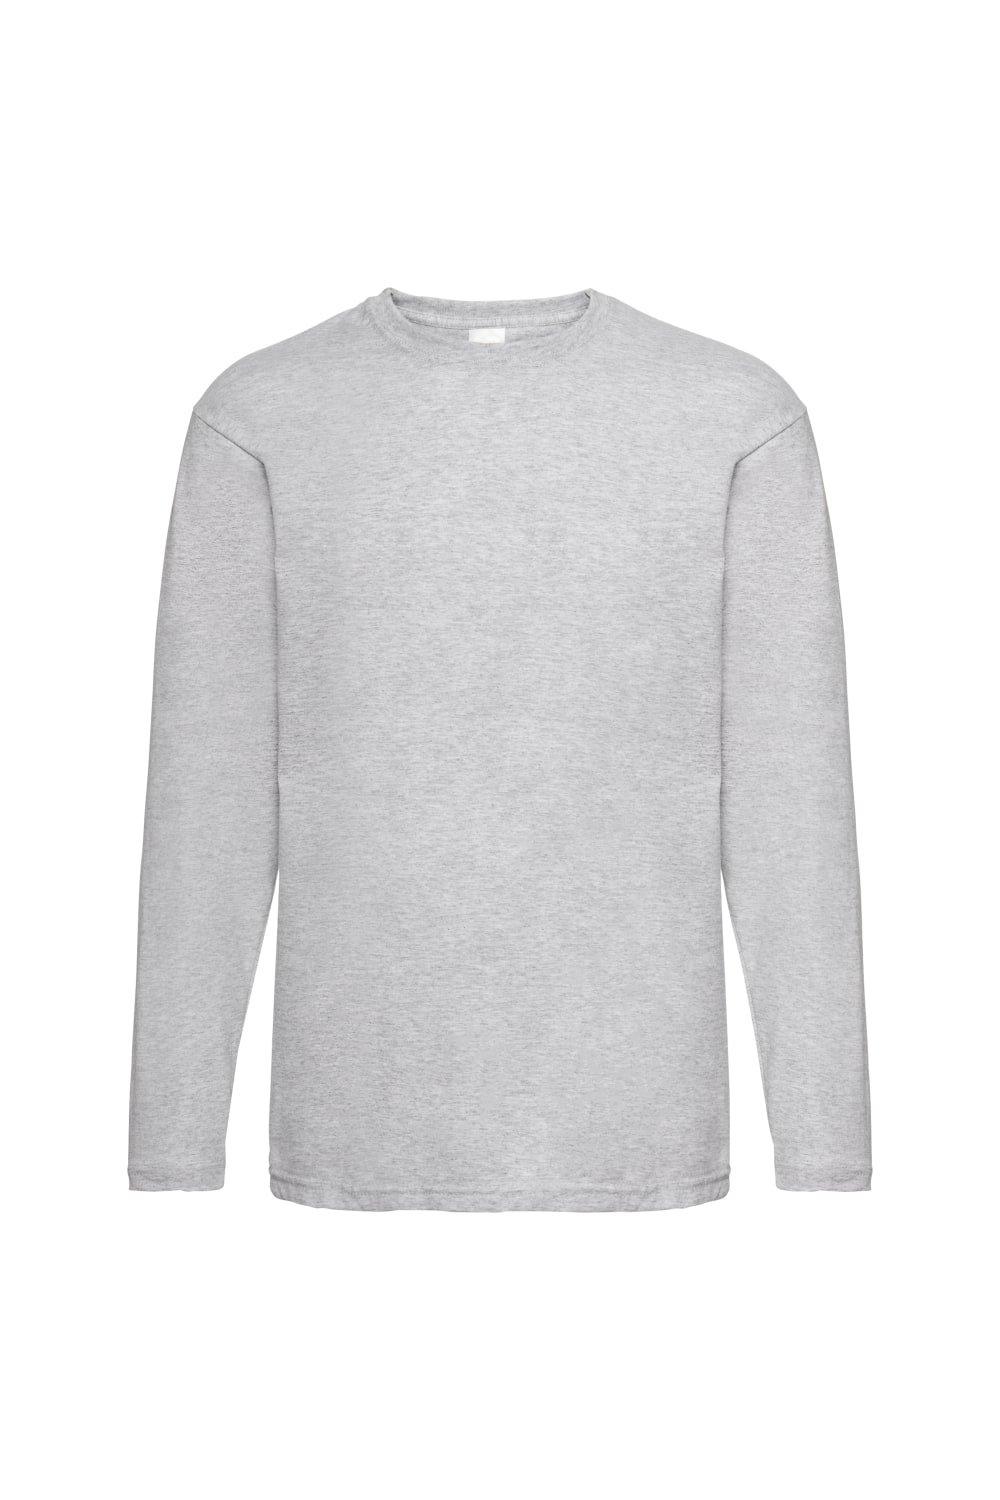 Повседневная футболка Value с длинным рукавом Universal Textiles, серый мужская футболка мишка спит 2xl серый меланж